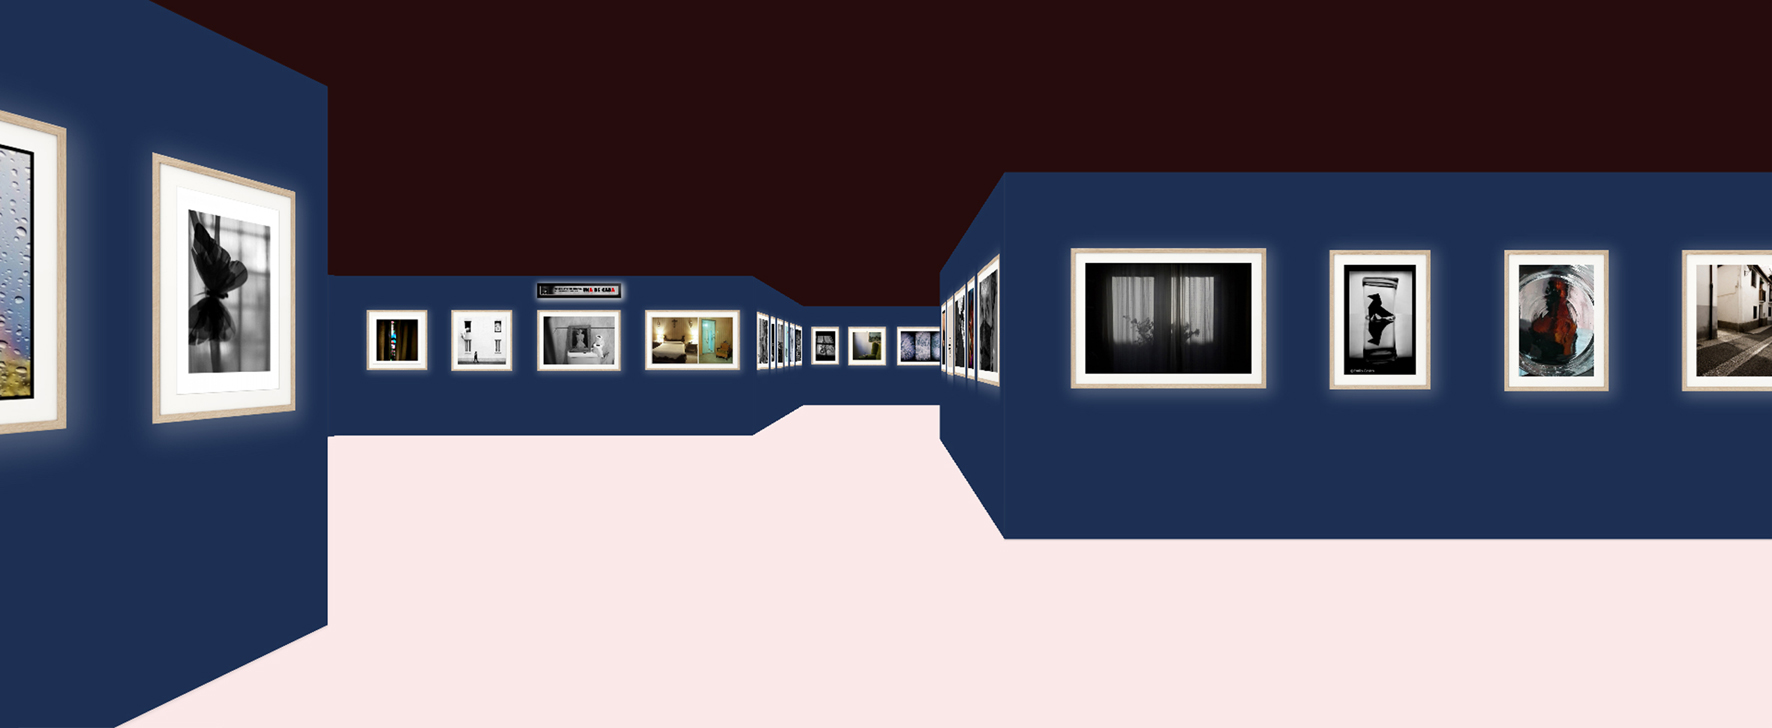 57 fotógrafos granadinos ofrecen su visión sobre la COVID-19 en una exposición virtual